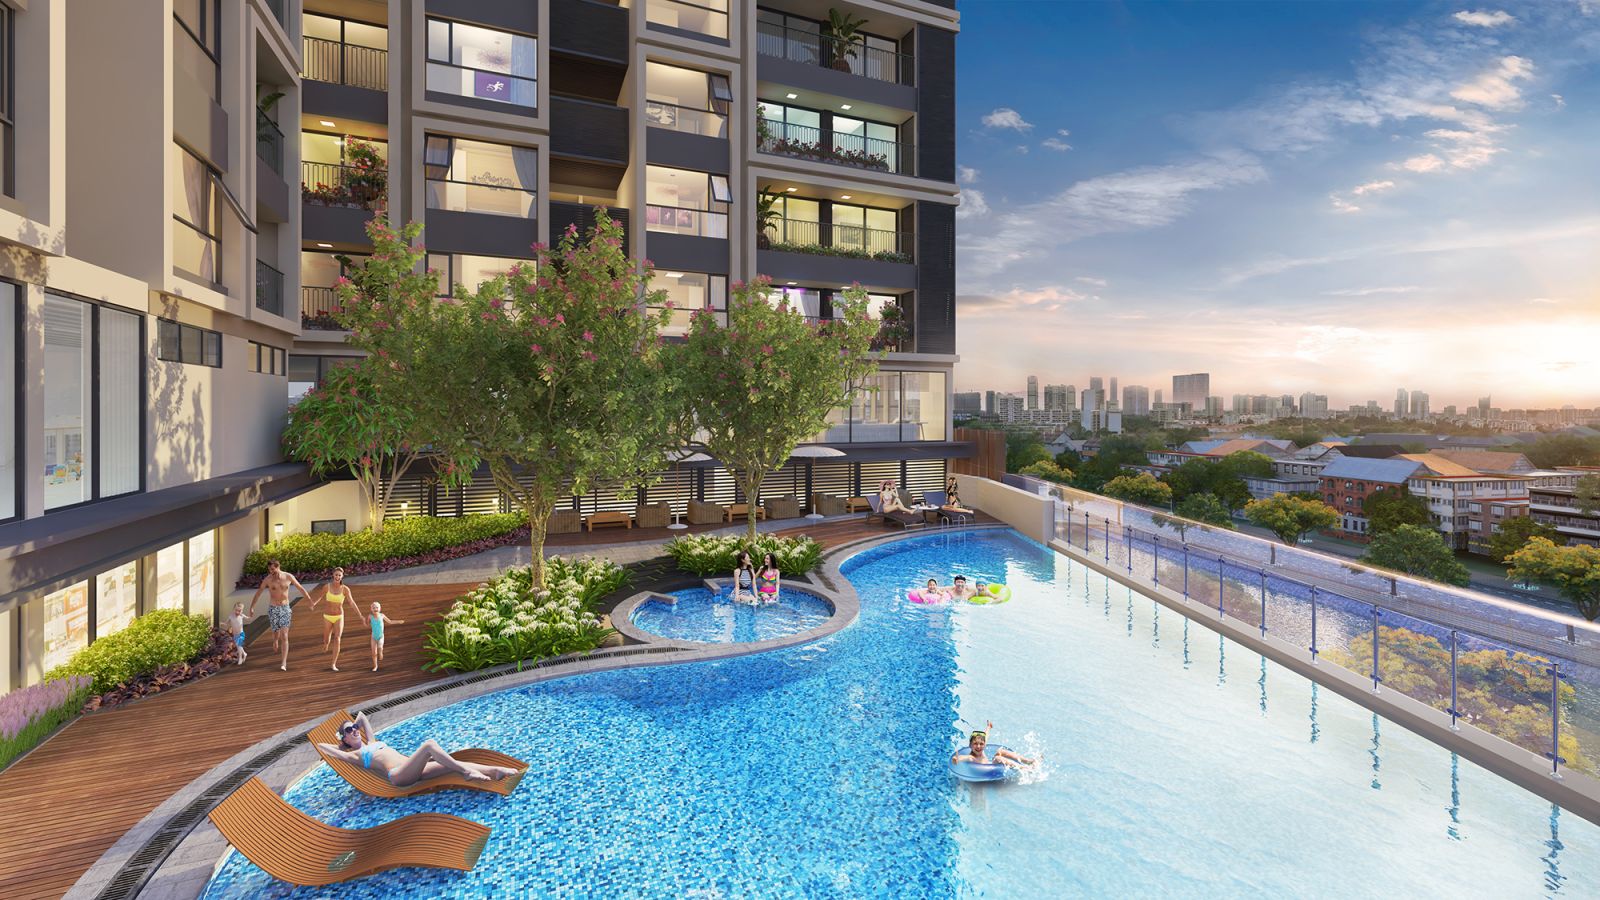 Chủ đầu tư Hinode City chấp nhận giảm diện tích xây dựng căn hộ để thiết kế bể bơi vô cực tại tầng 4 các block nhà.